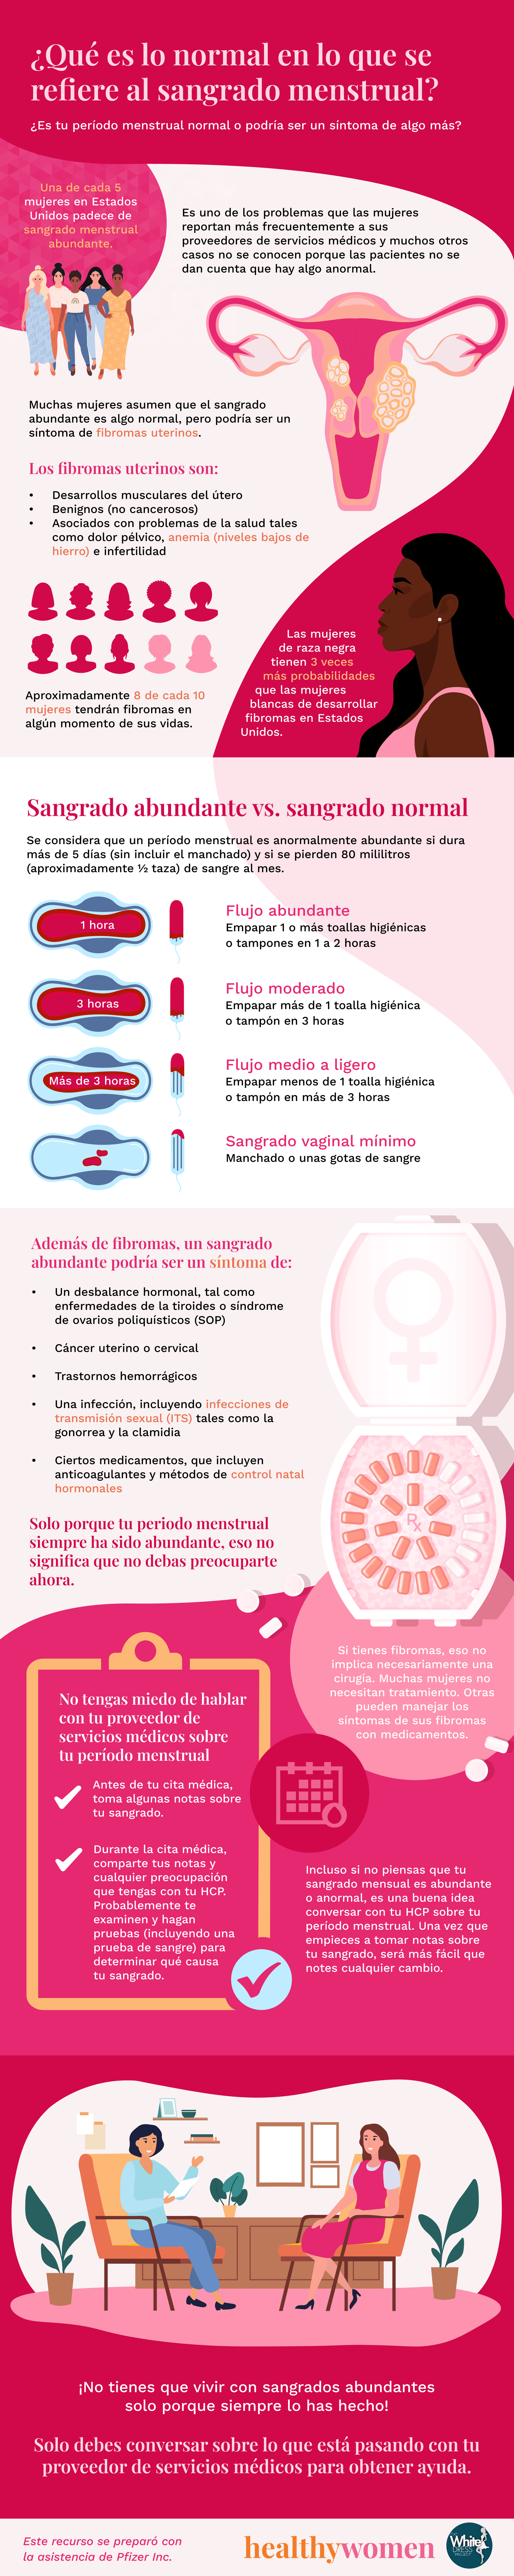 u00bfQuu00e9 es lo normal en lo que se refiere al sangrado menstrual? Infographic